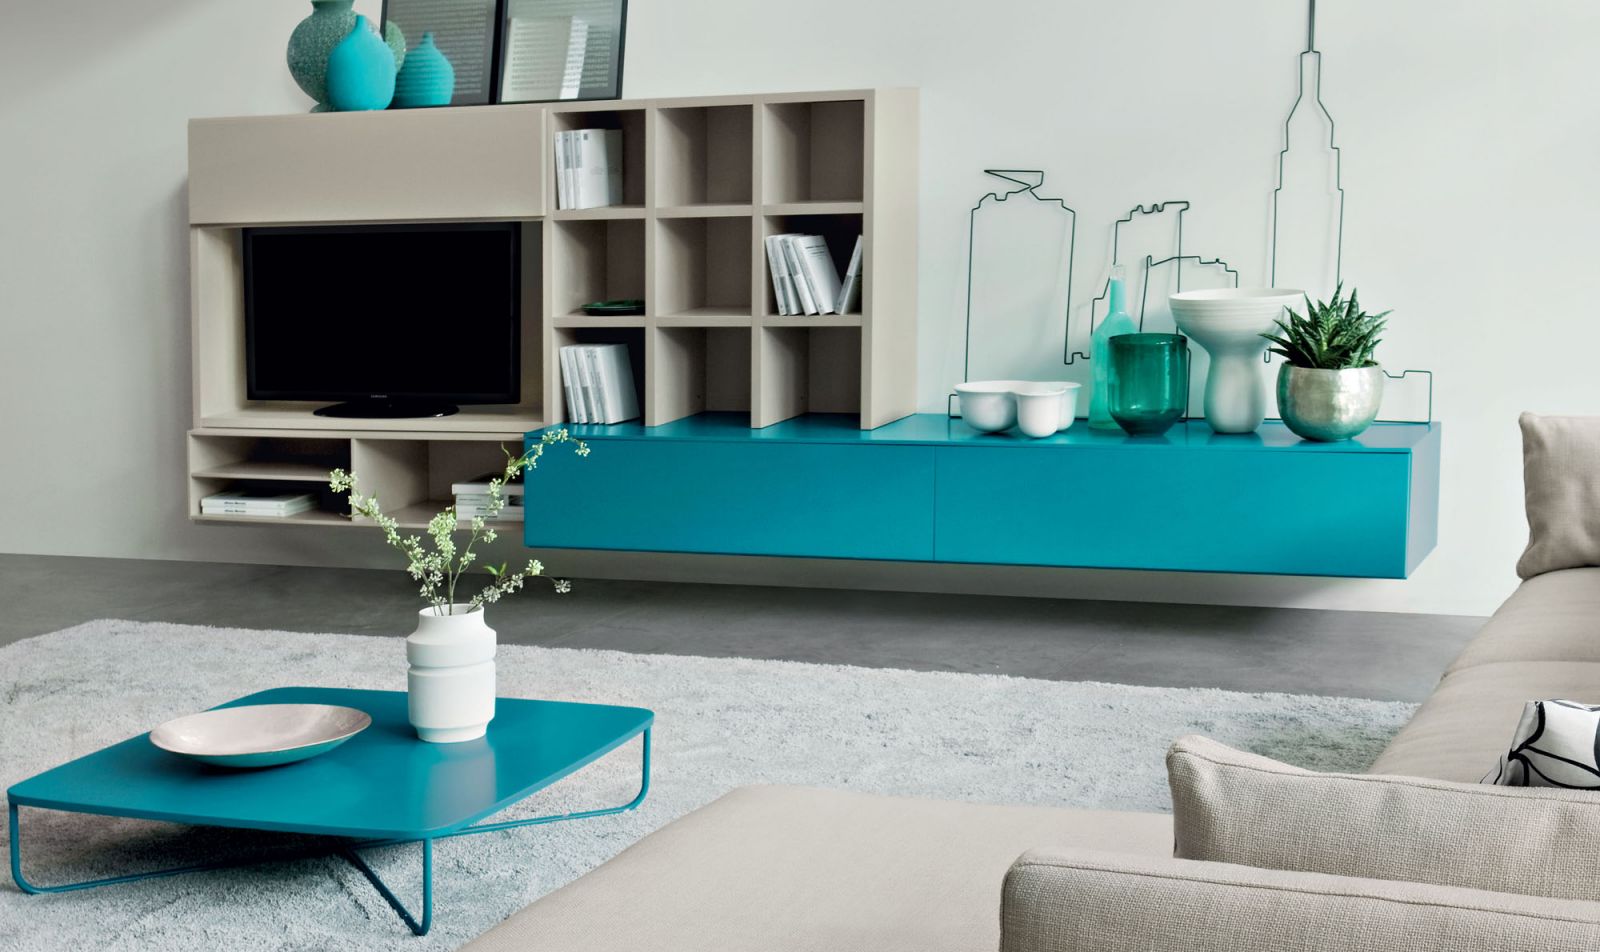 Idee per un soggiorno moderno con libreria e porta tv for Idee soggiorni moderni